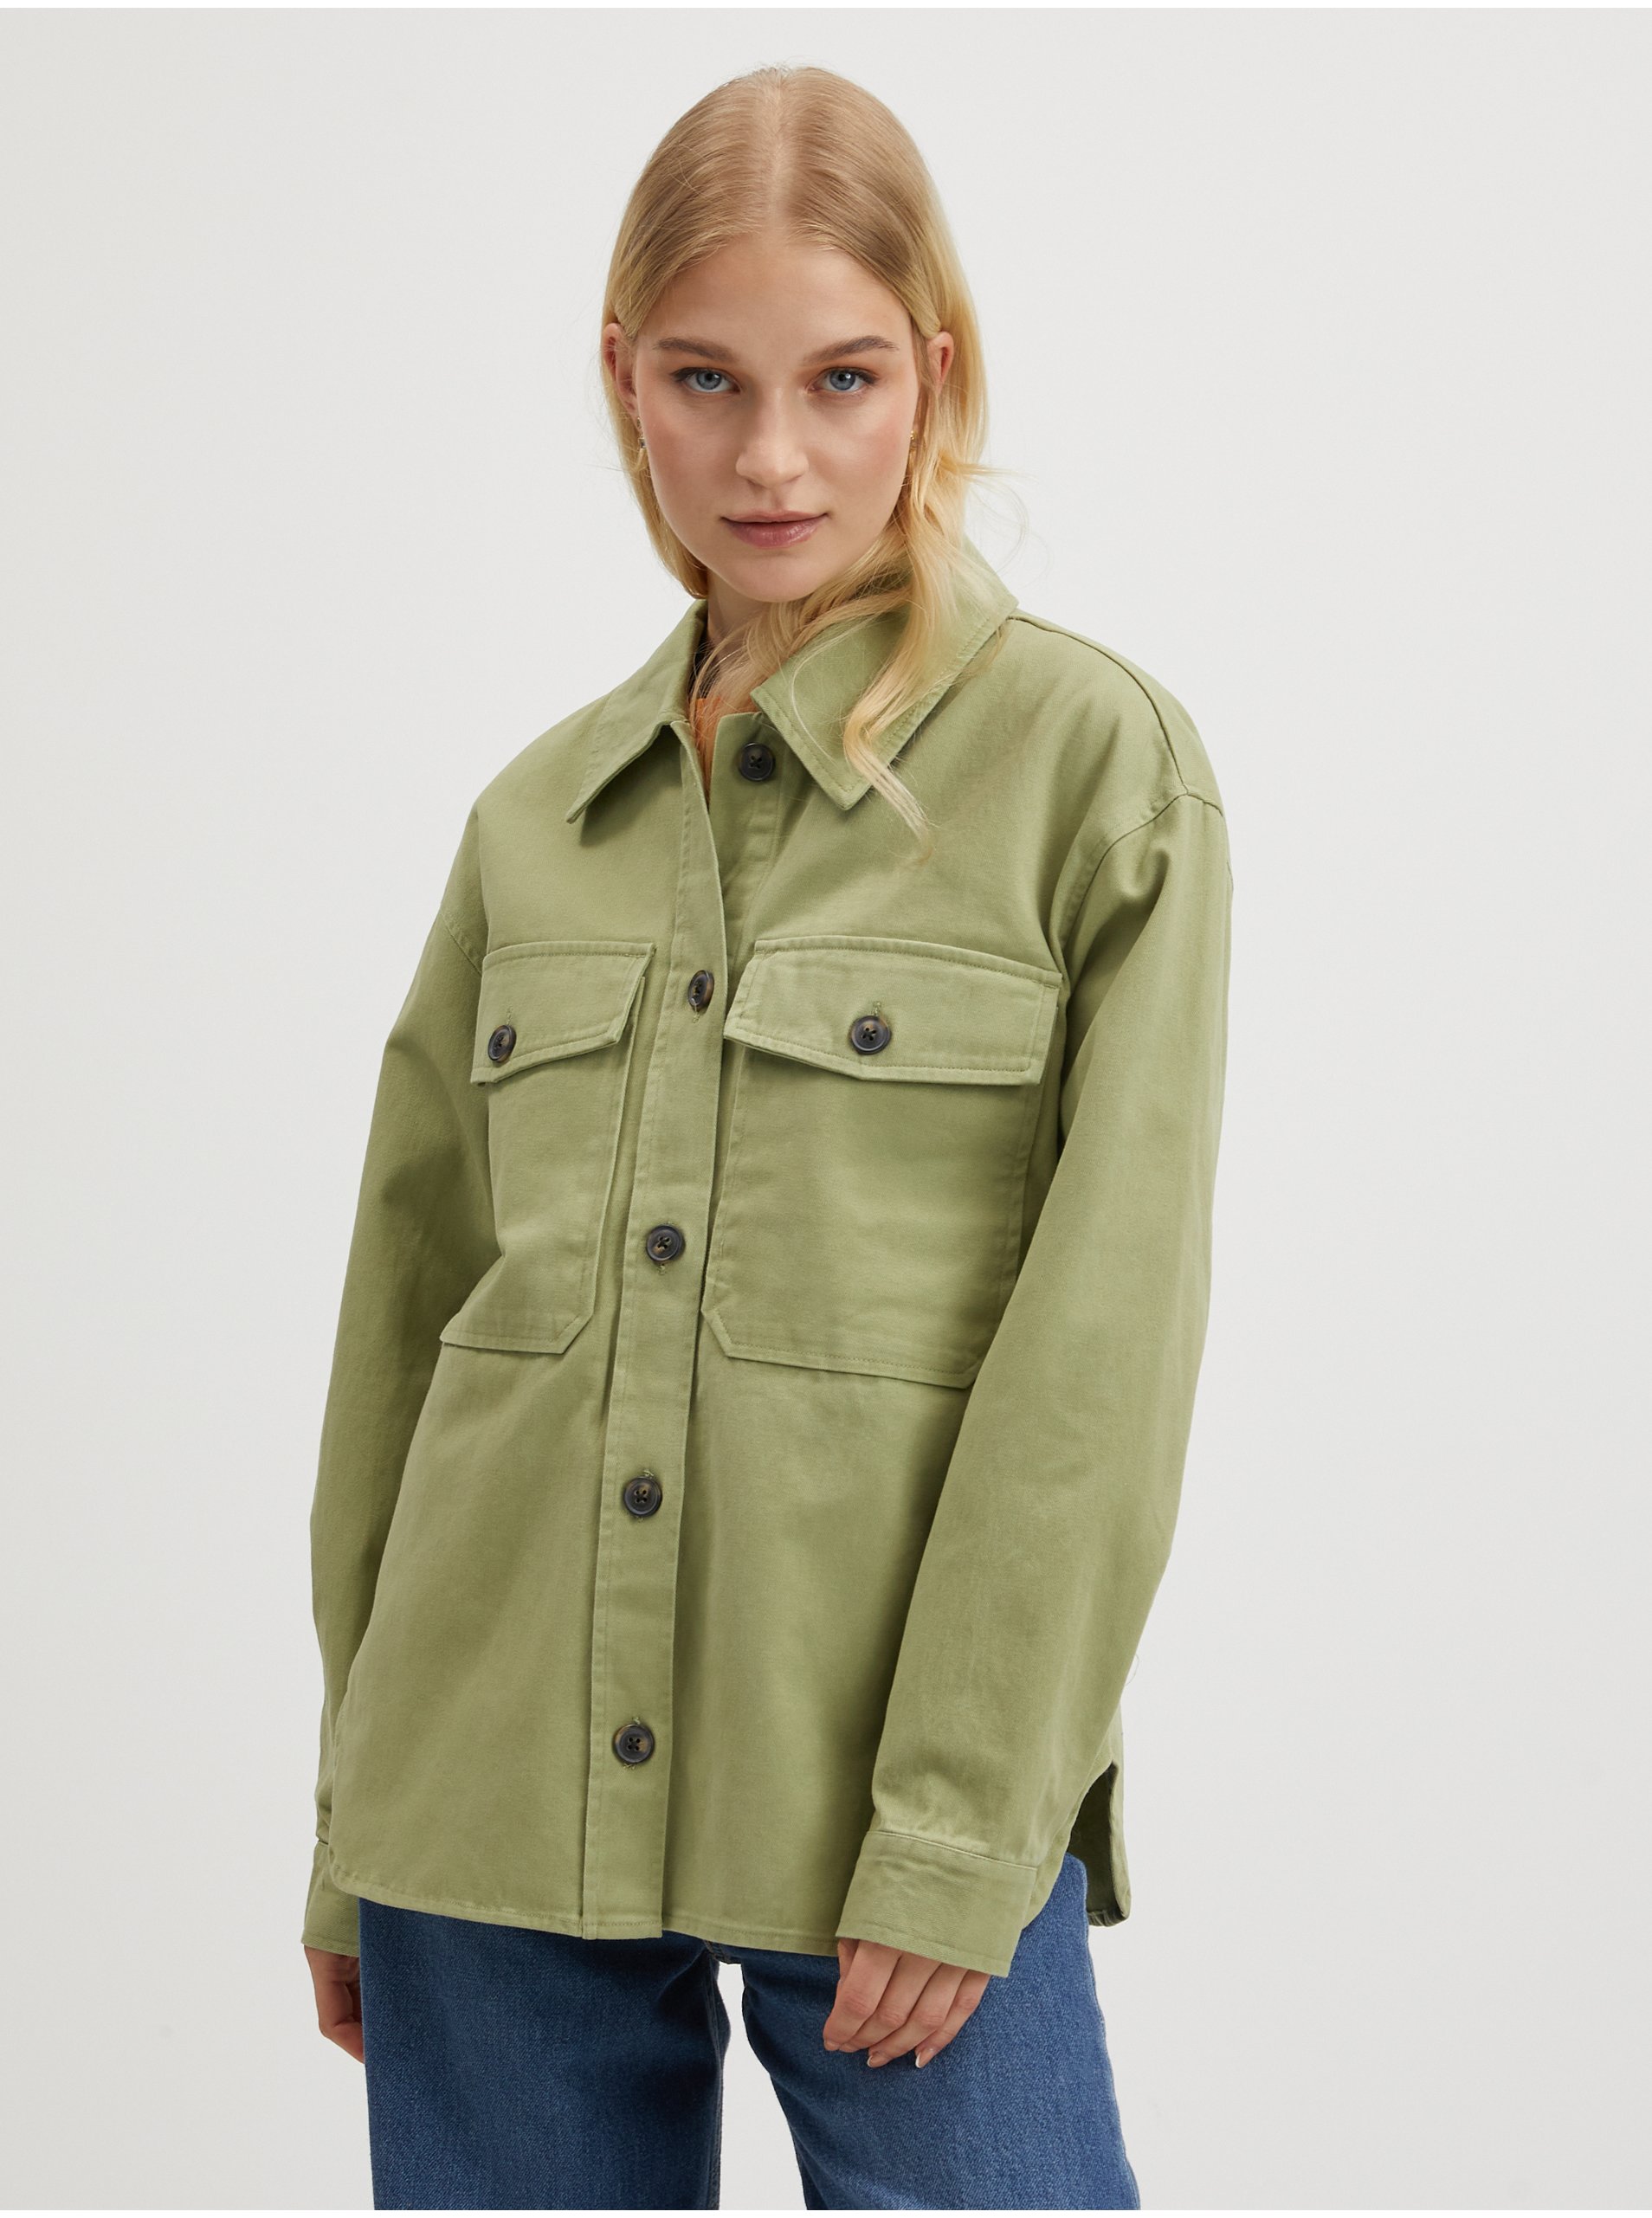 E-shop Světle zelená dámská lehká košilová bunda VERO MODA Fame